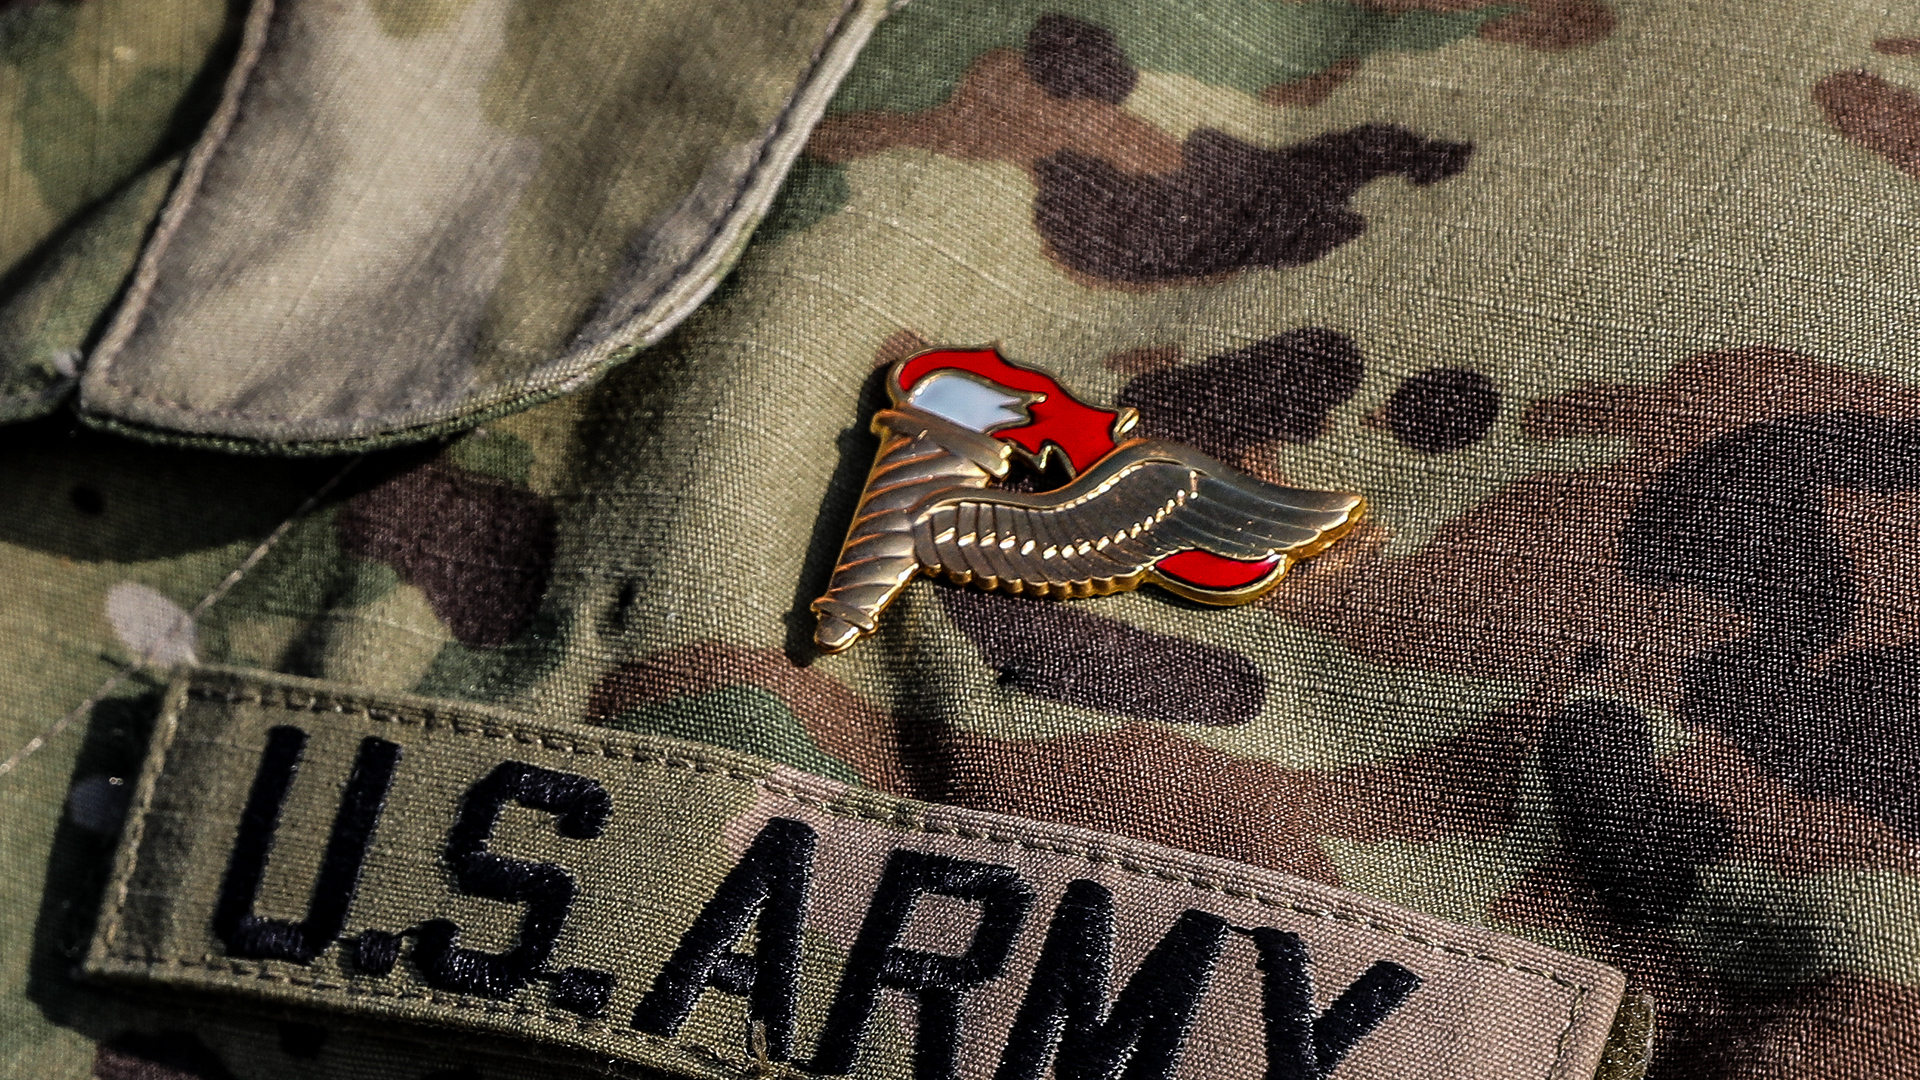 Pathfinder badge on a U.S. Army uniform.